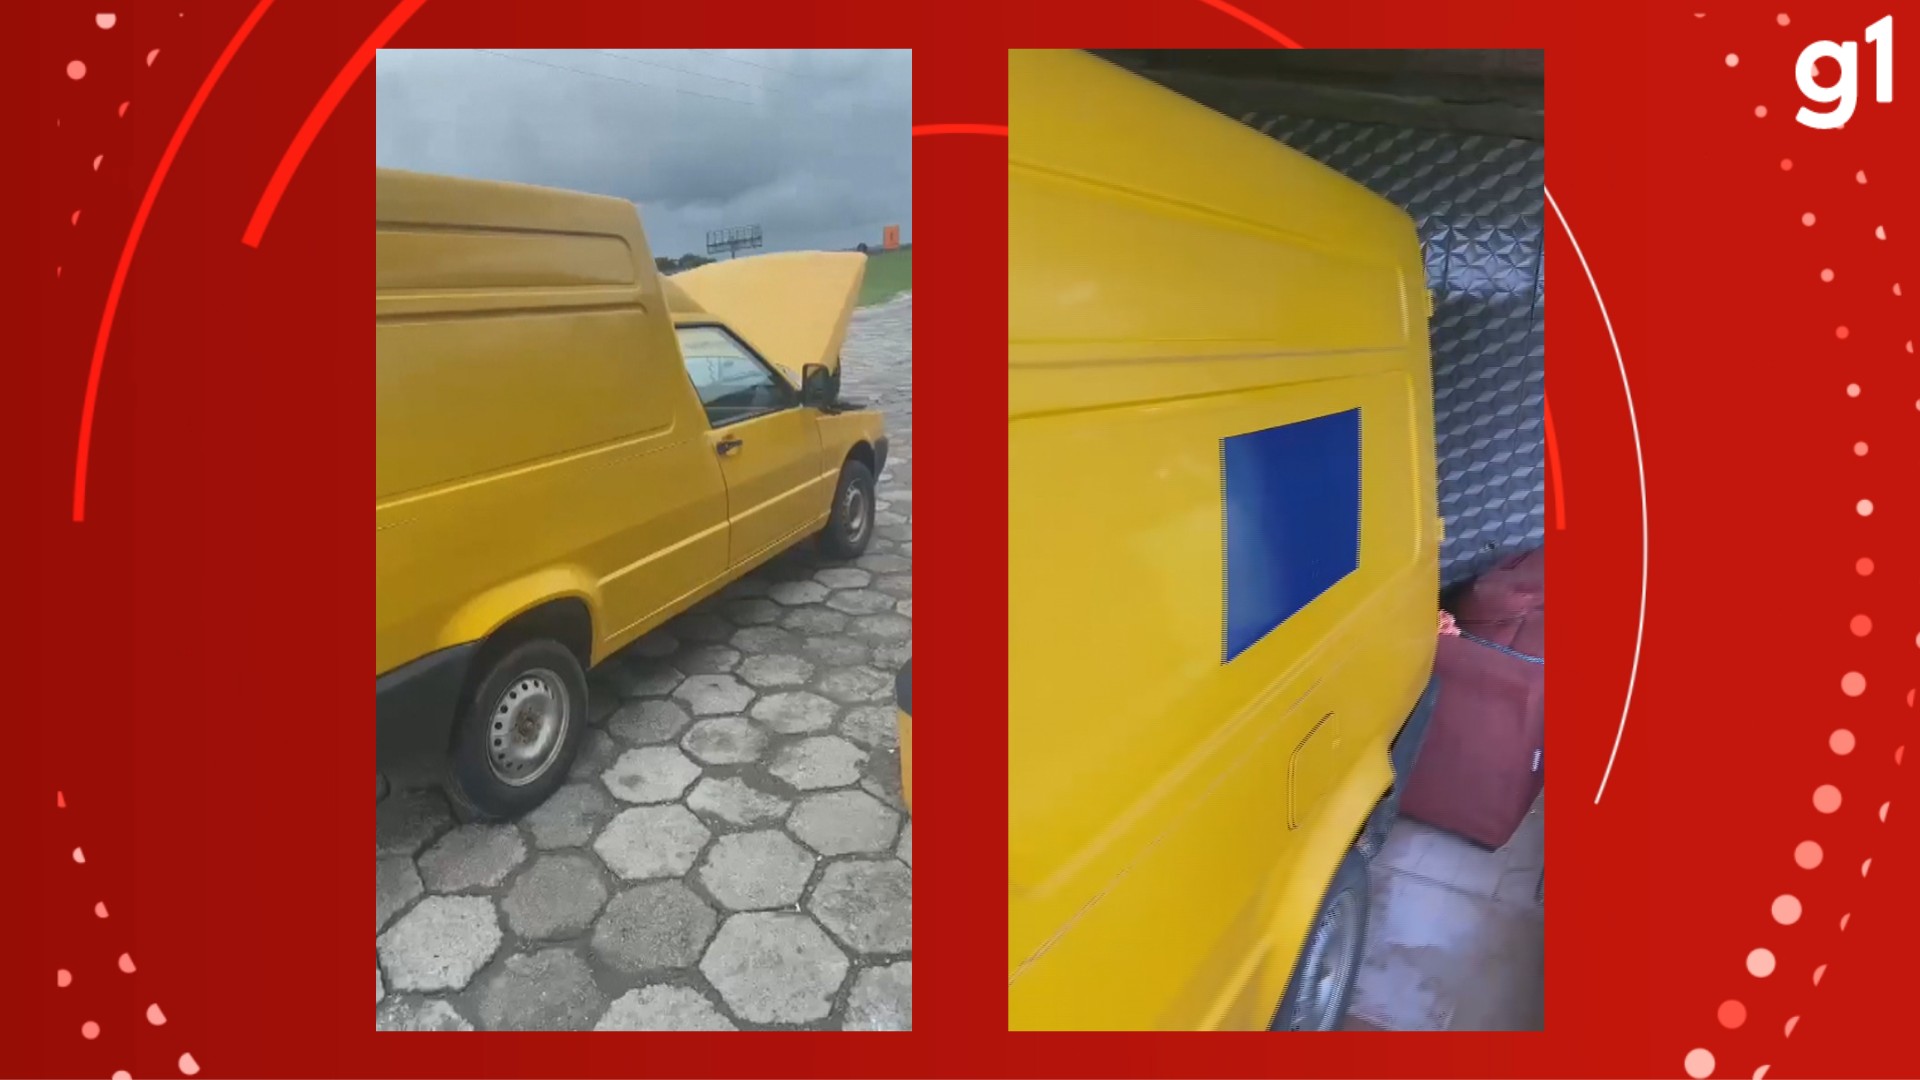 Quadrilha suspeita de furtar encomendas dos Correios no RS pintou caminhonete de amarelo para não chamar a atenção, diz PF